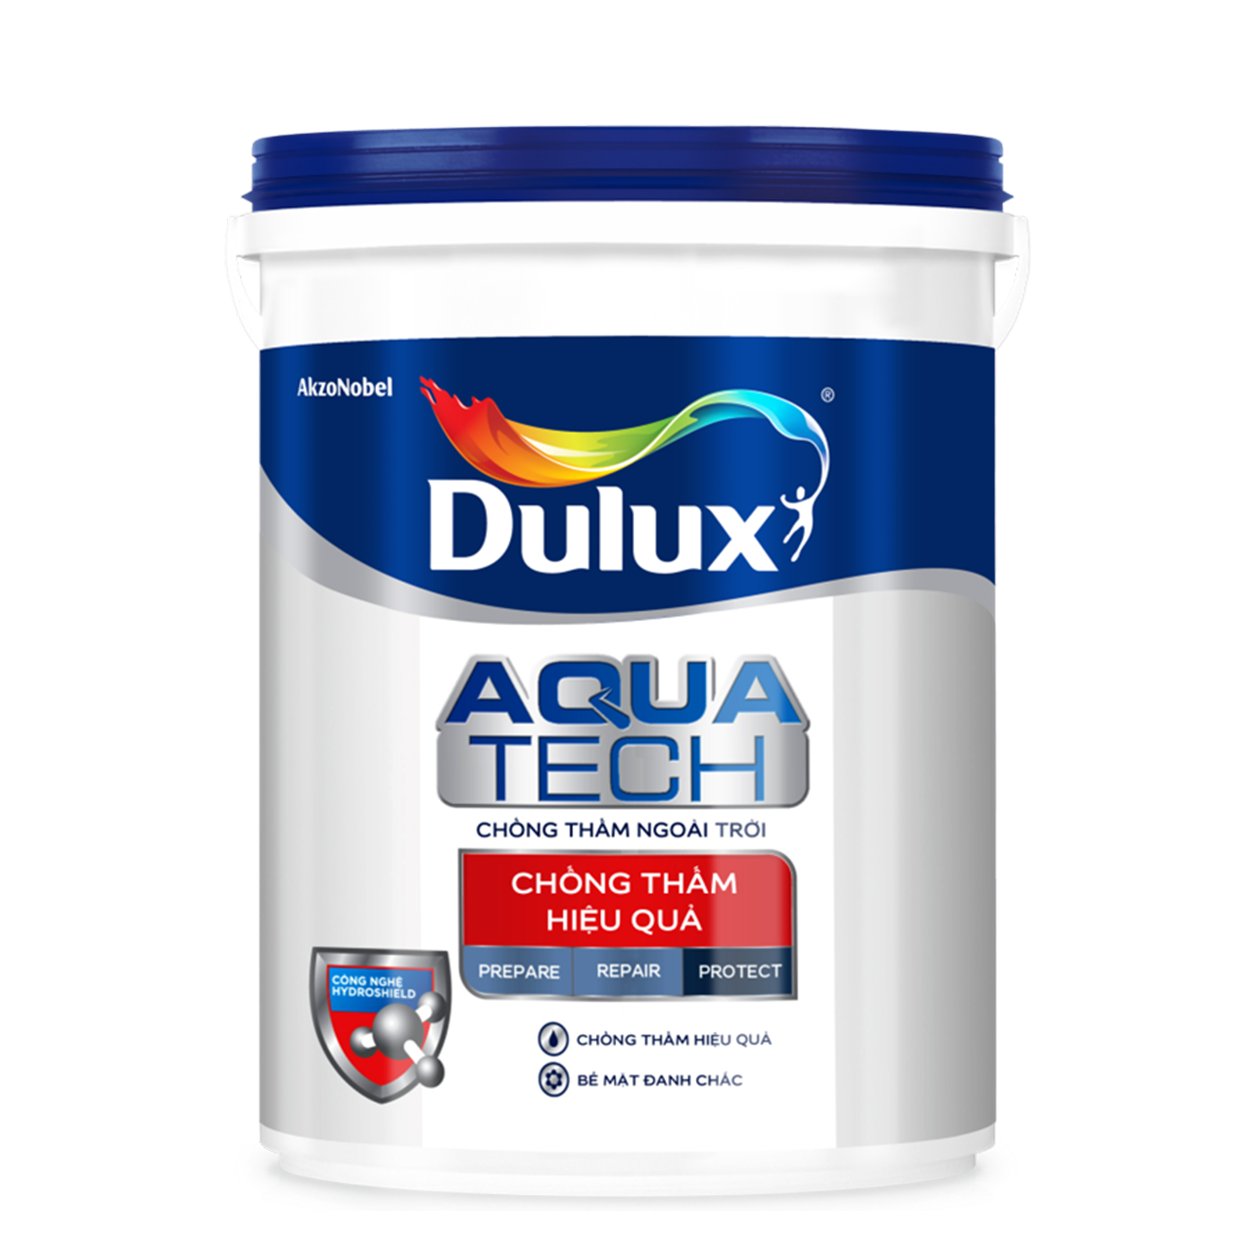 Sơn Dulux Aquatech: Giải pháp hoàn hảo cho việc bảo vệ và trang trí bề mặt ngoại thất